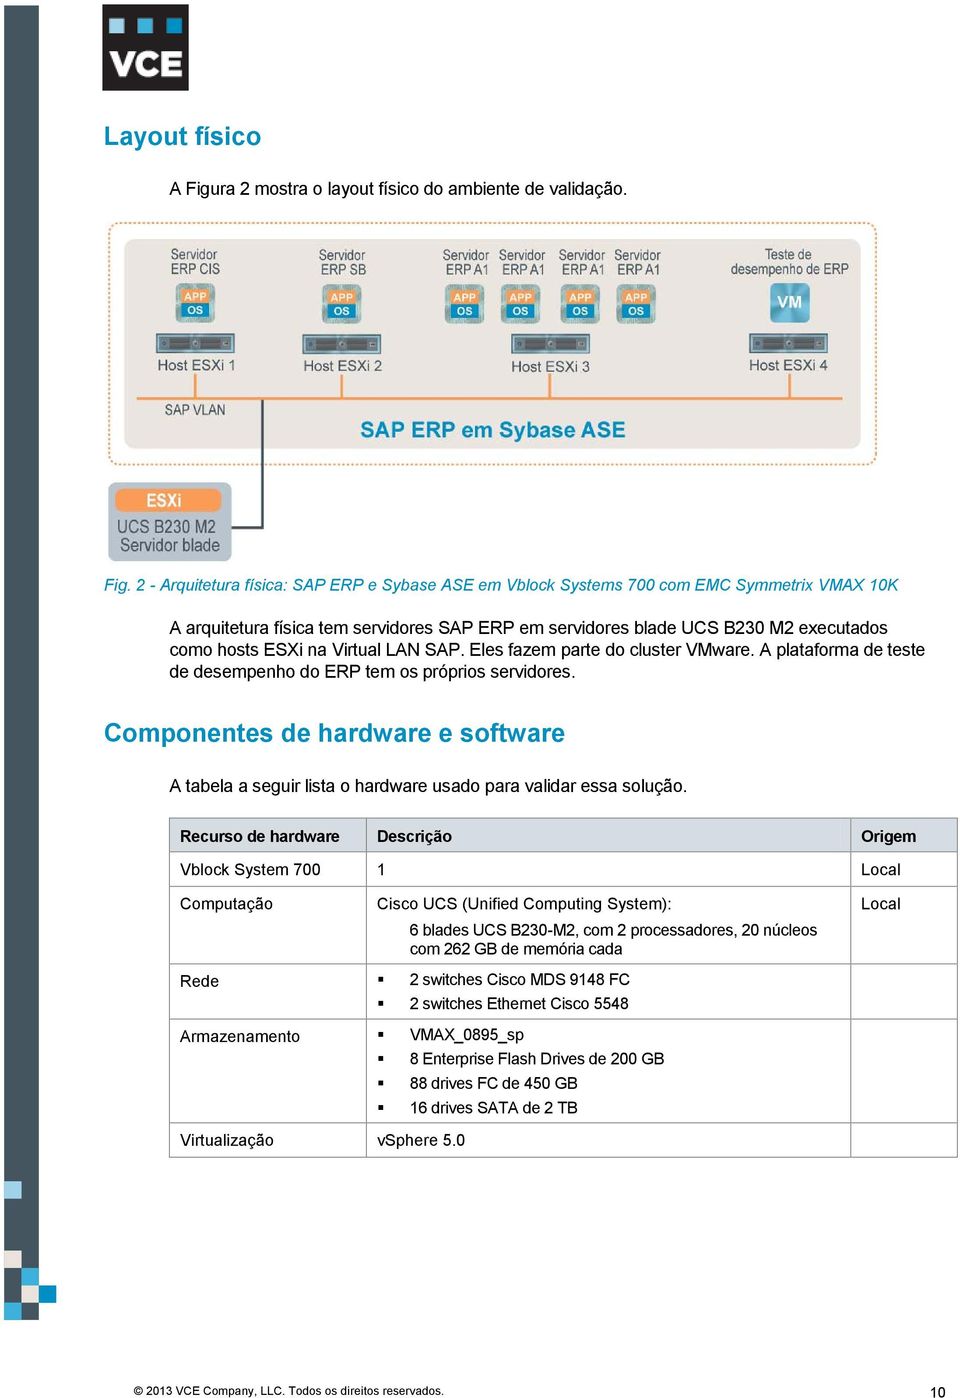 2 - Arquitetura física: SAP ERP e Sybase ASE em Vblock Systems 700 com EMC Symmetrix VMAX 10K A arquitetura física tem servidores SAP ERP em servidores blade UCS B230 M2 executados como hosts ESXi na